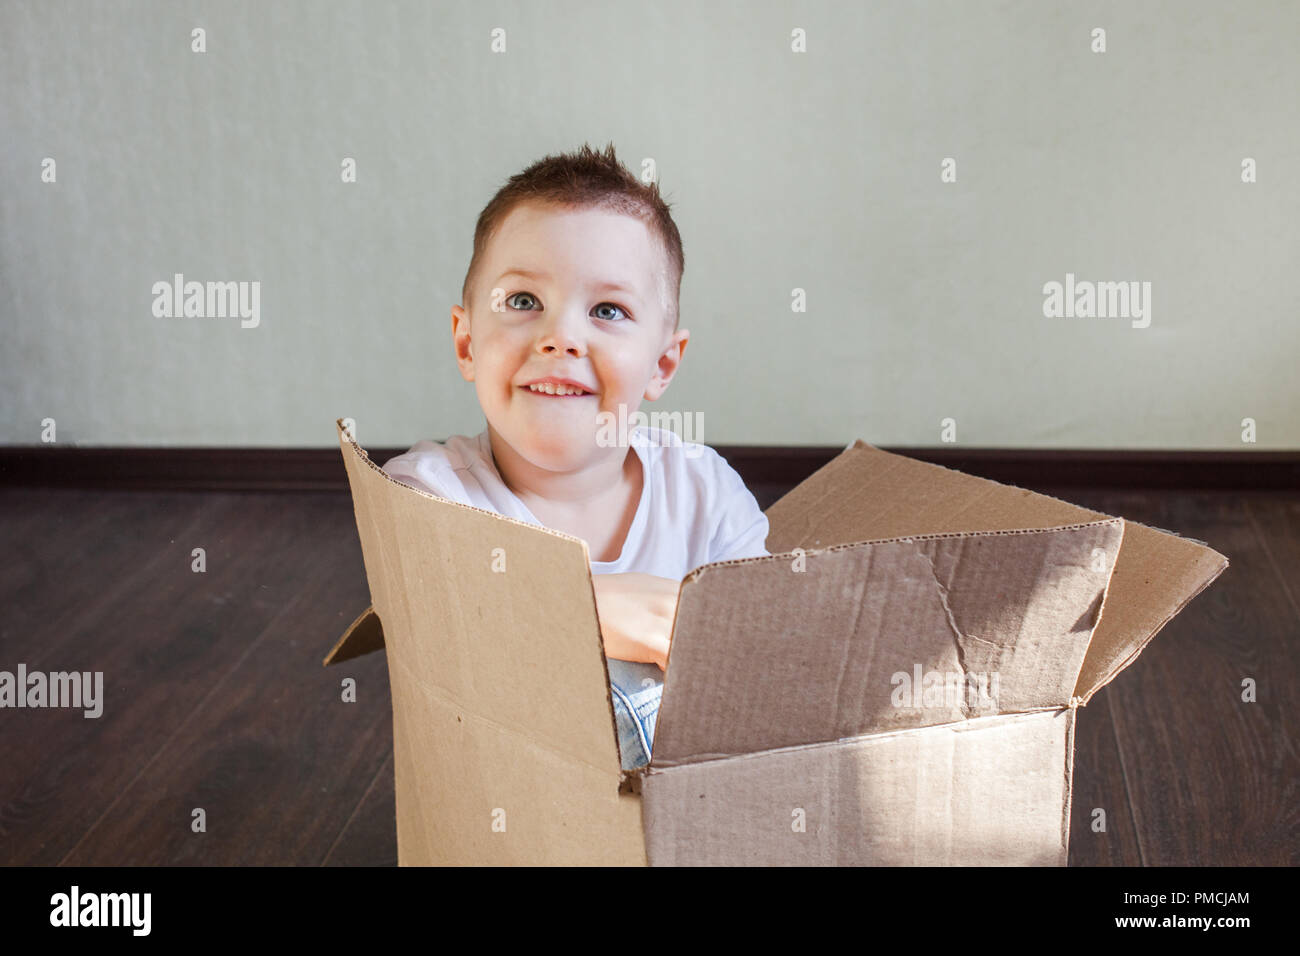 Junge 4 Jahre alt blonder Mann in einem Karton zu Hause sitzen und Lächeln, aufrichtige Gefühle und Spaß Stockfoto